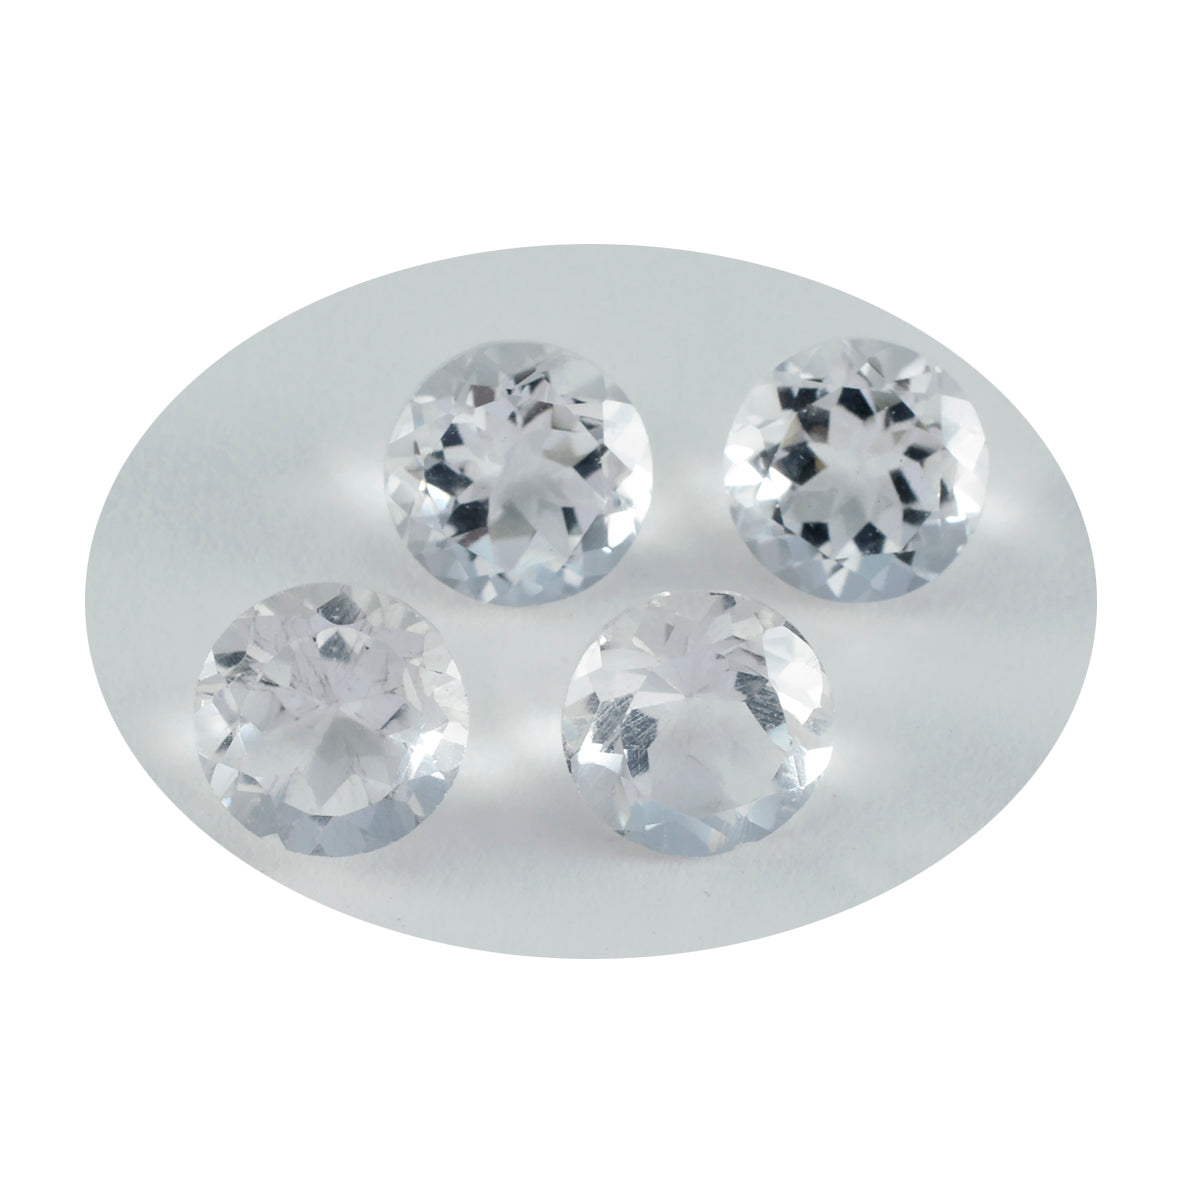 Riyogems 1 Stück weißer Kristallquarz, facettiert, 7 x 7 mm, runde Form, ein hochwertiger Edelstein